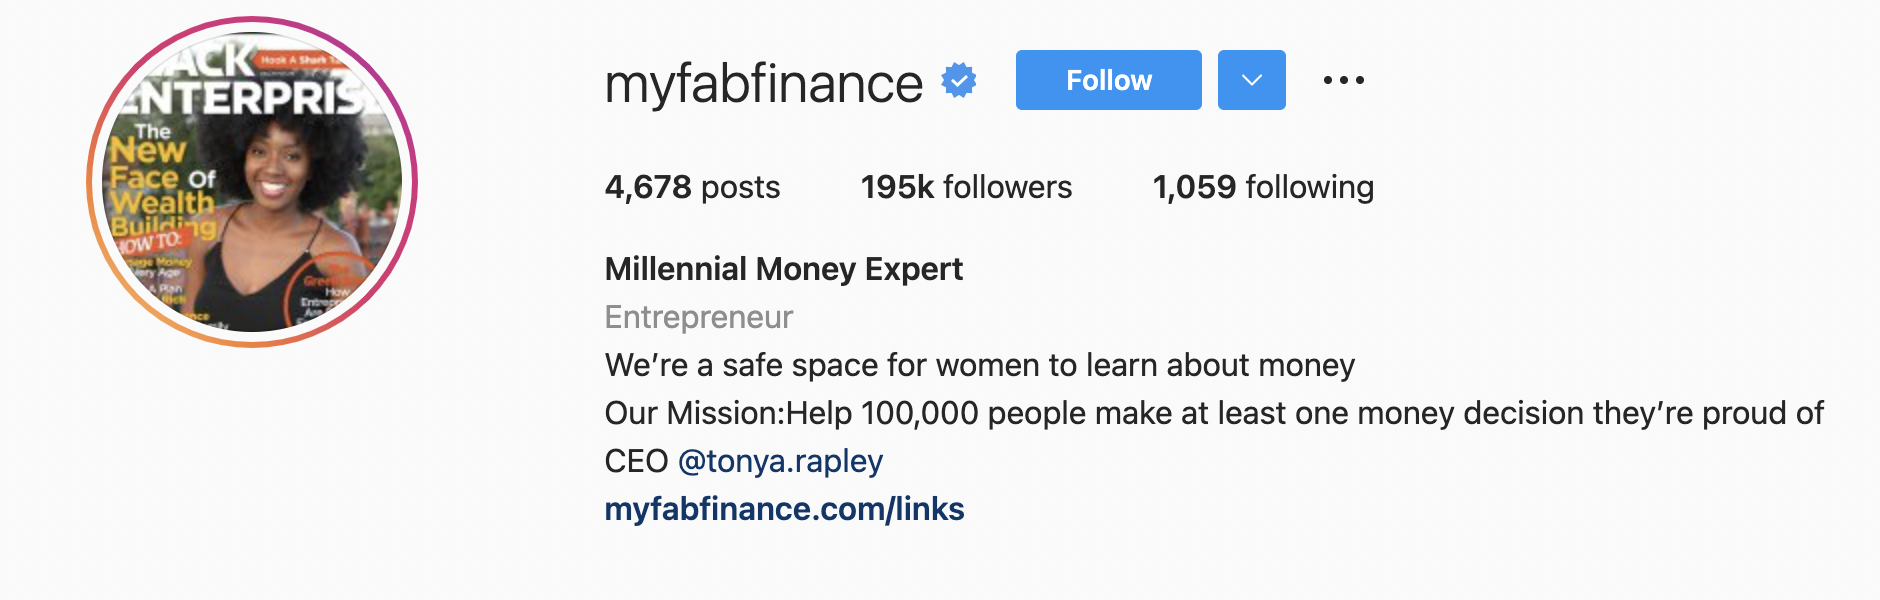 MyFabFinance Instagram